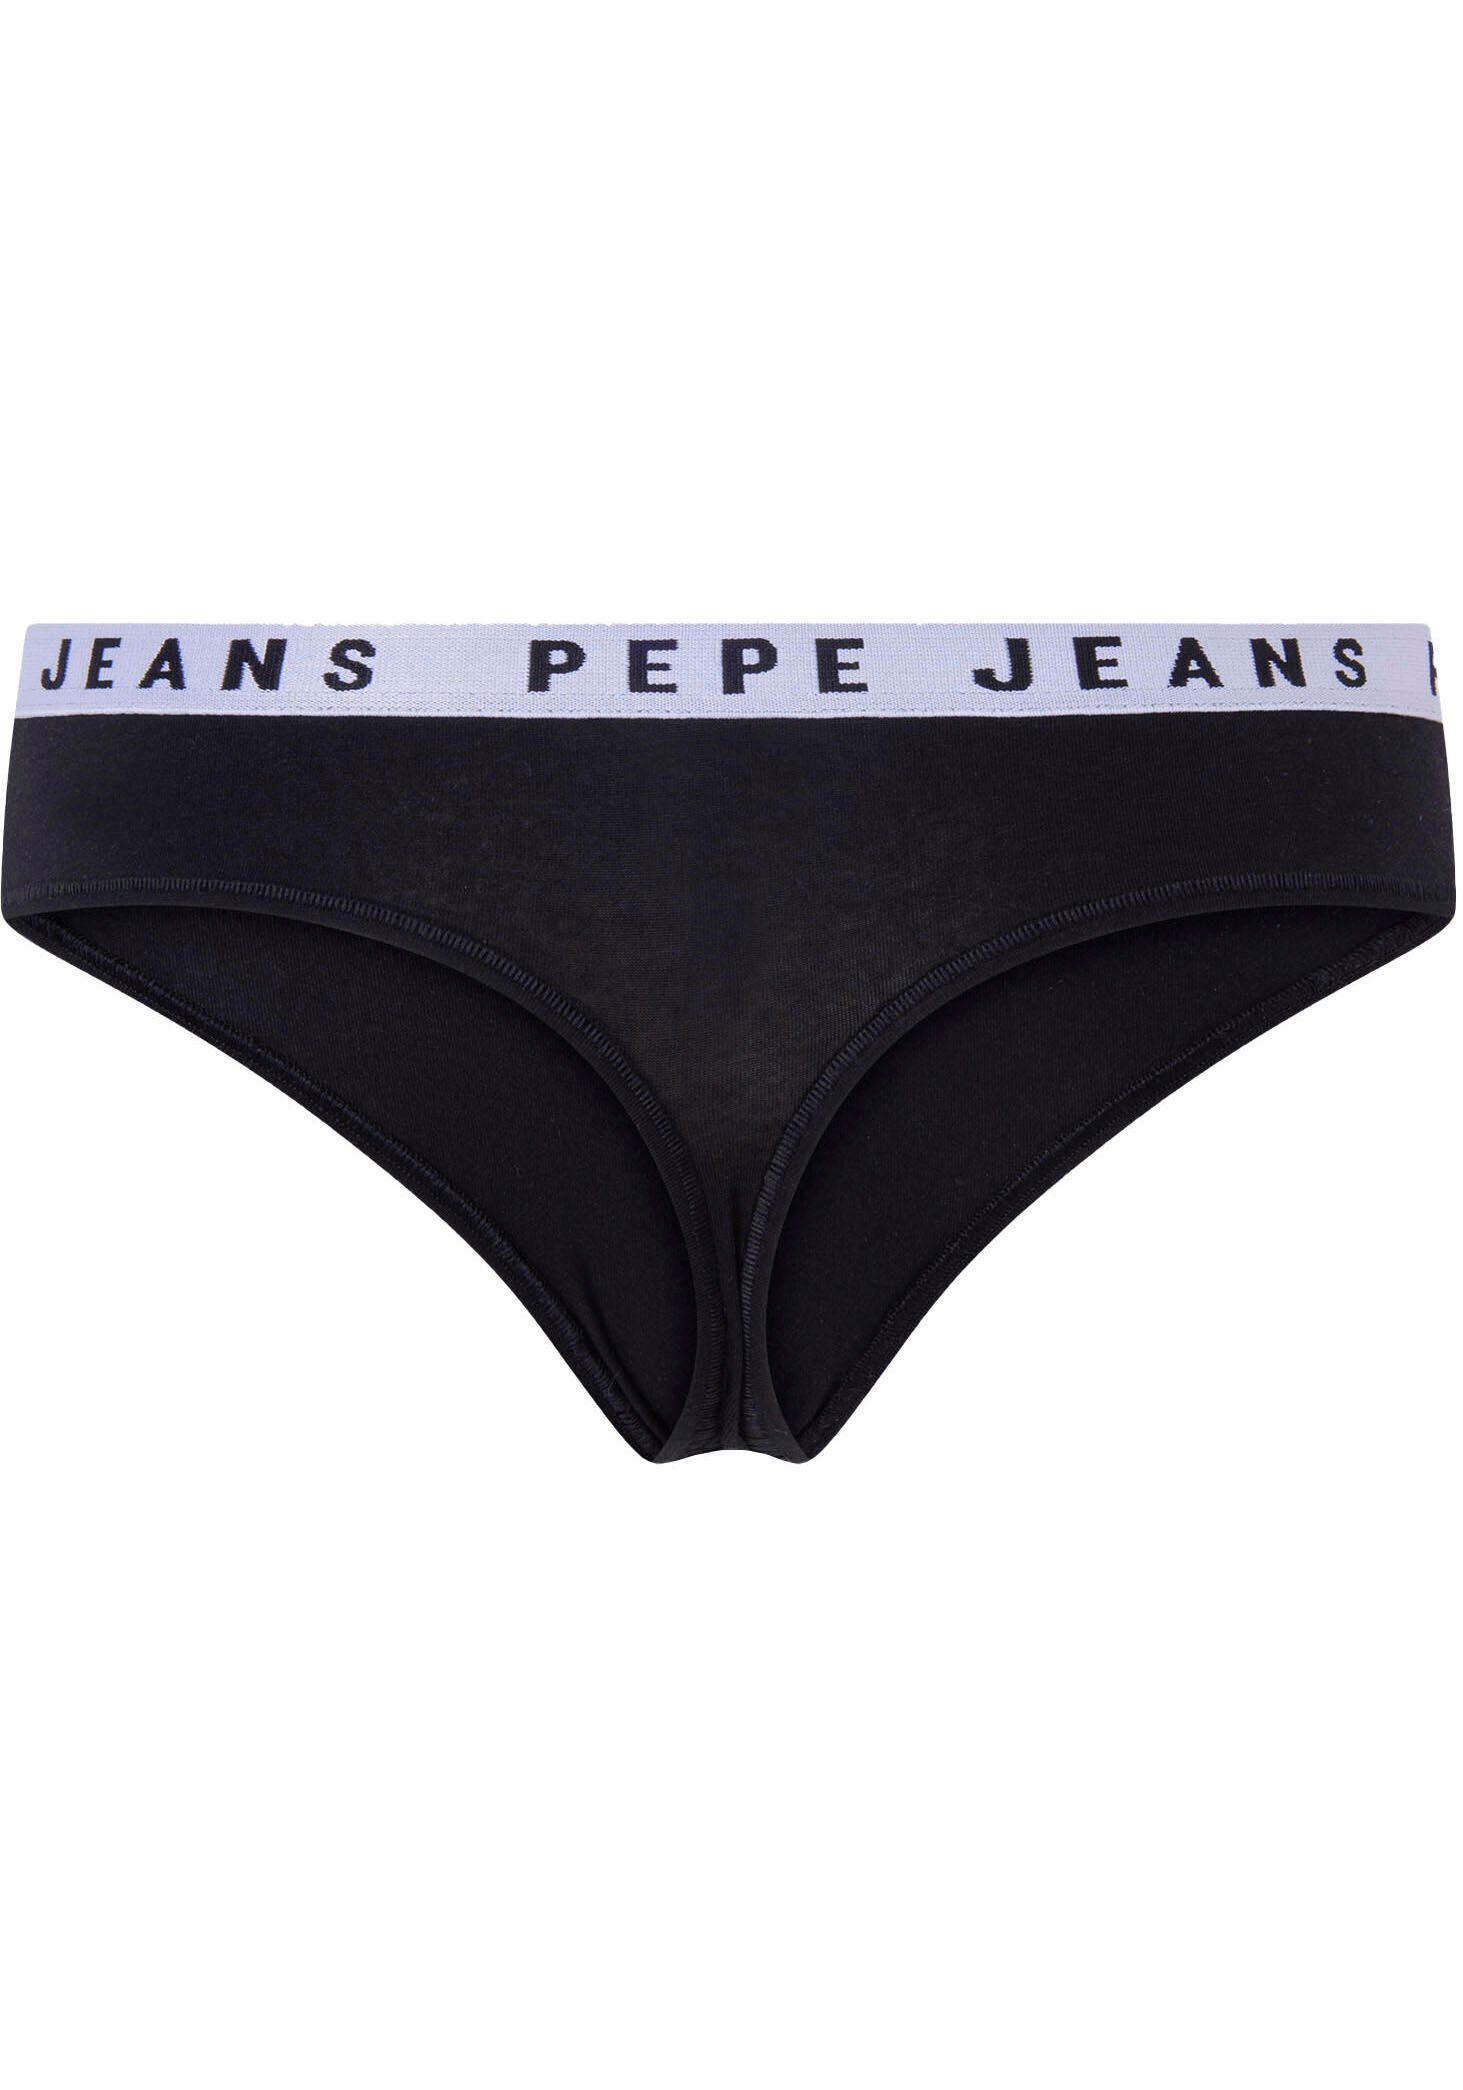 Jeans String Pepe Thong Logo schwarz